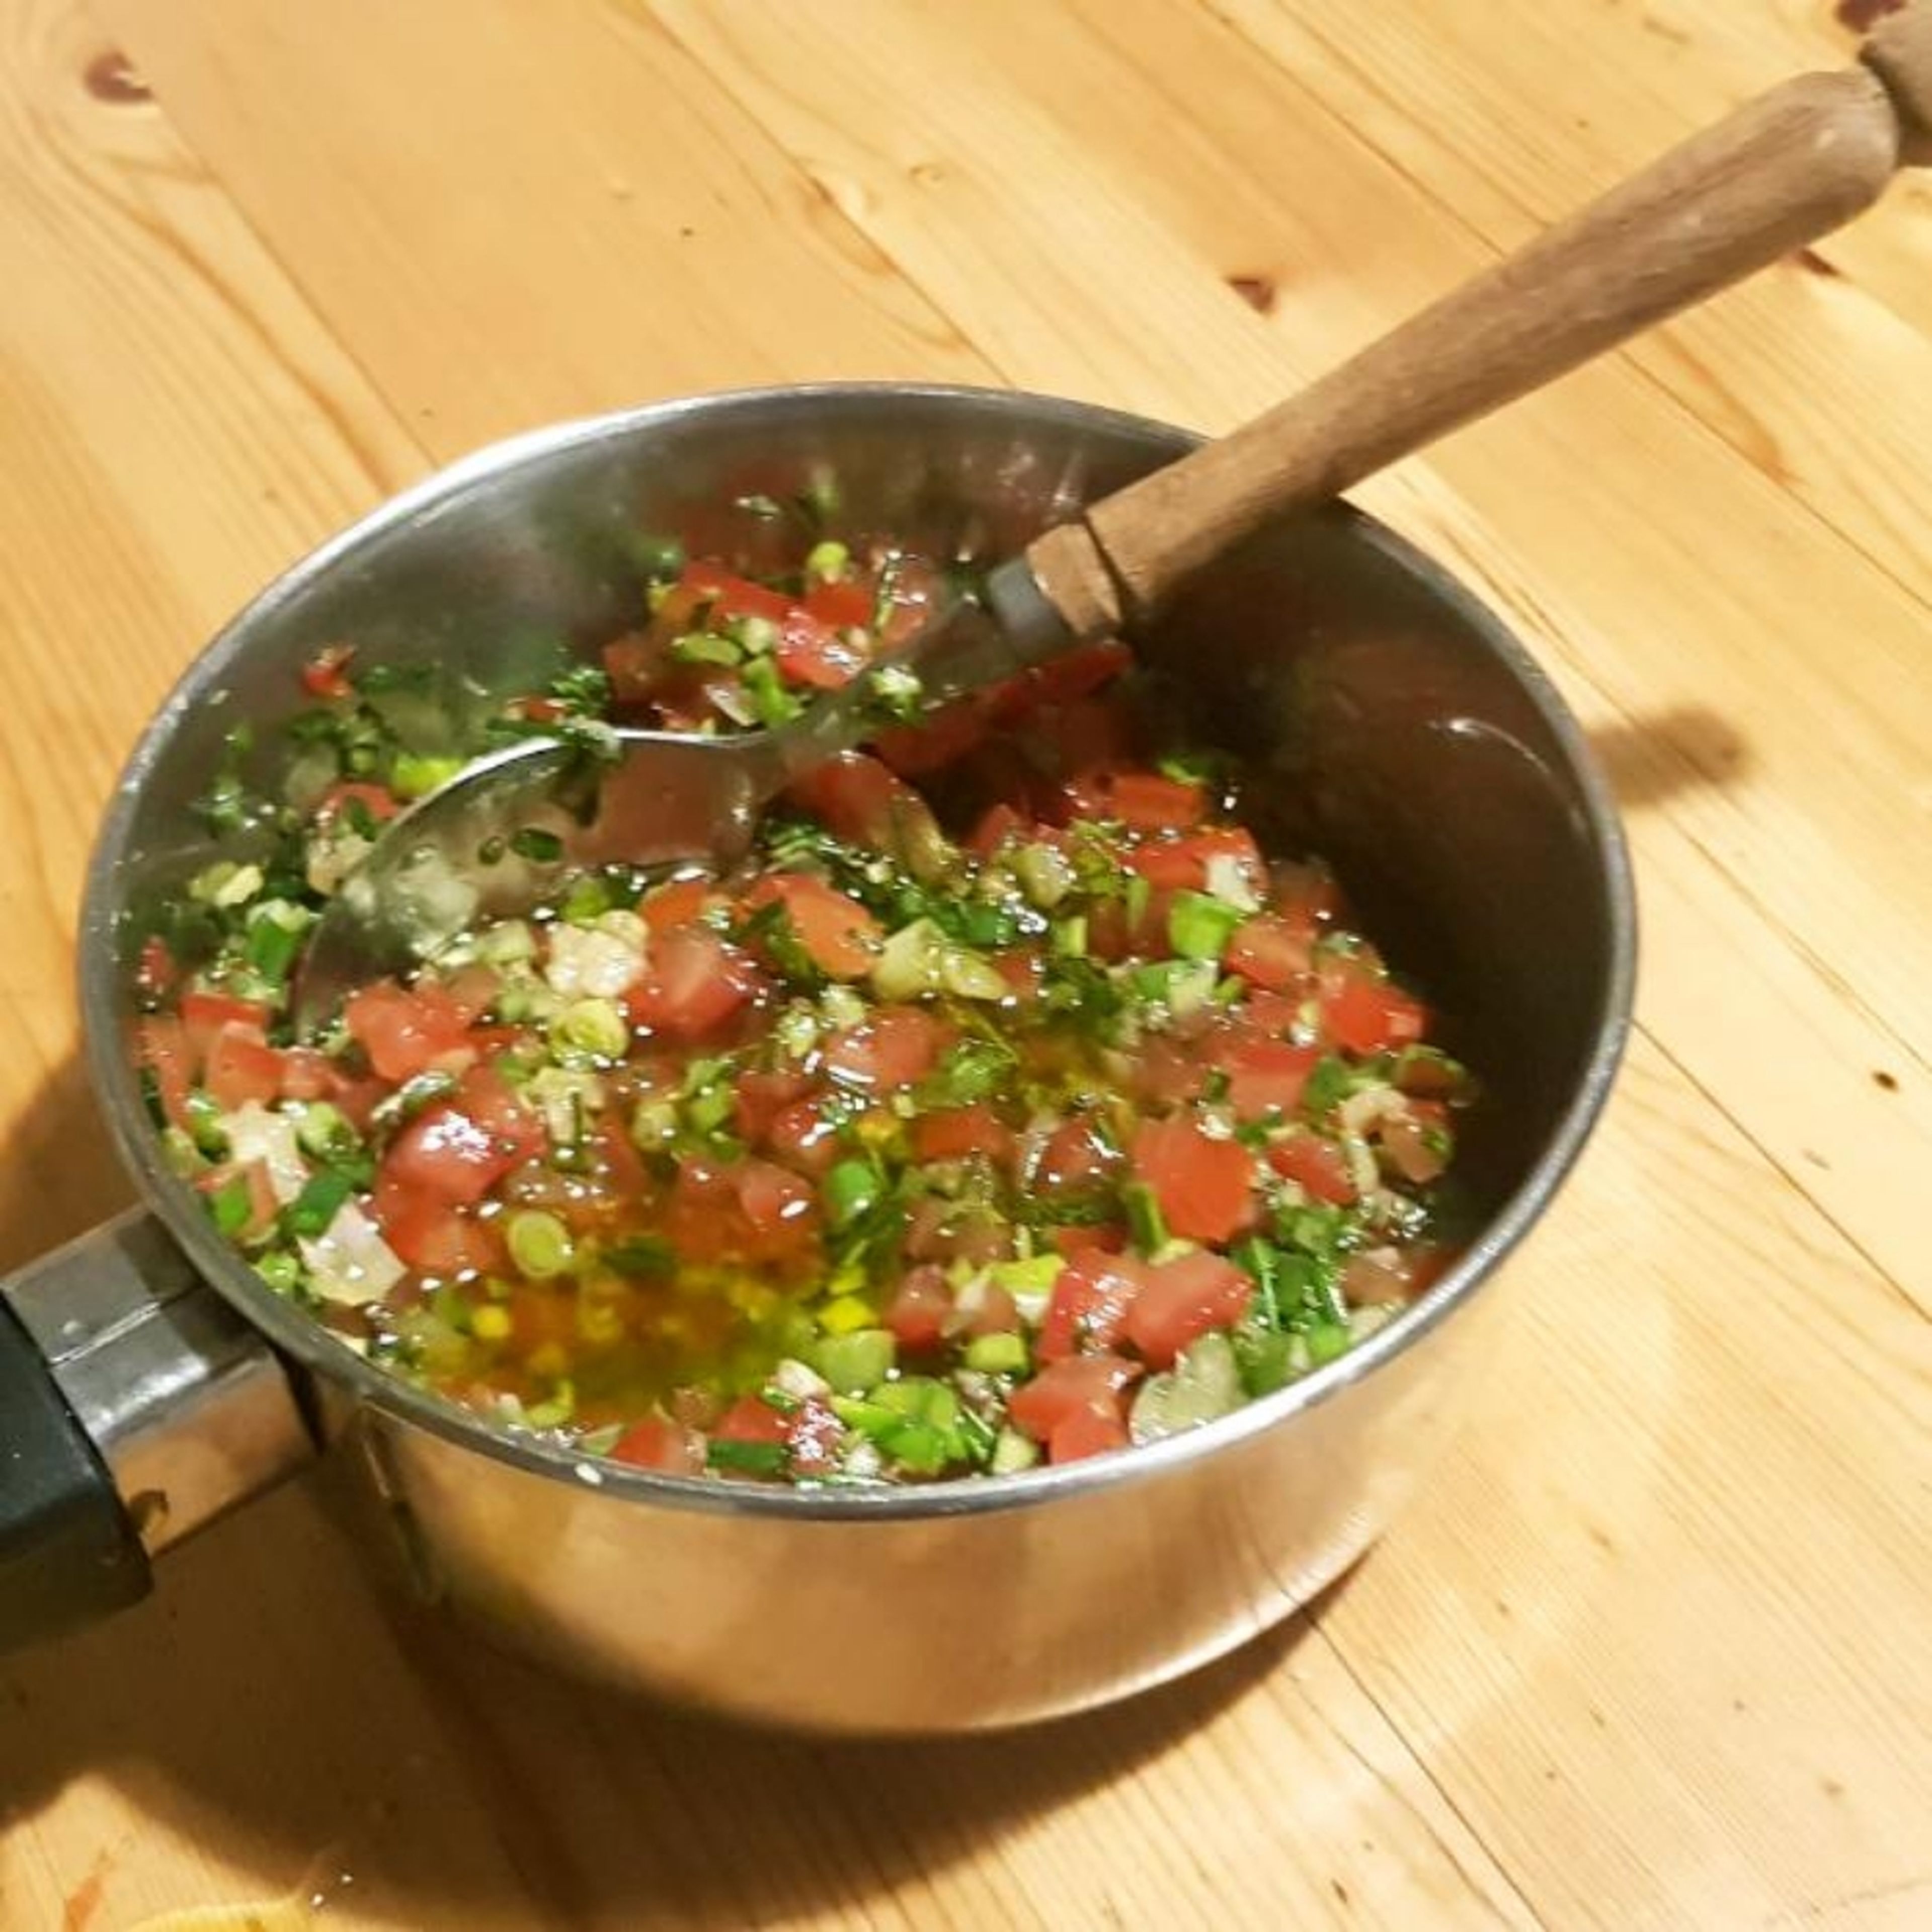 Währenddessen den Dip vorbereiten. Die Tomaten entkernen (Inneres einfach nebenbei essen) und ganz fein schneiden. Frühlingszwiebeln, Knoblauch und Kräuter ebenfalls sehr fein hacken. Alles mit Olivenöl vermengen und mit Salz, Pfeffer und Agavendicksaft abschmecken und ziehen lassen. Kurz bevor die Artischocken fertig sind, den Dip erwärmen.